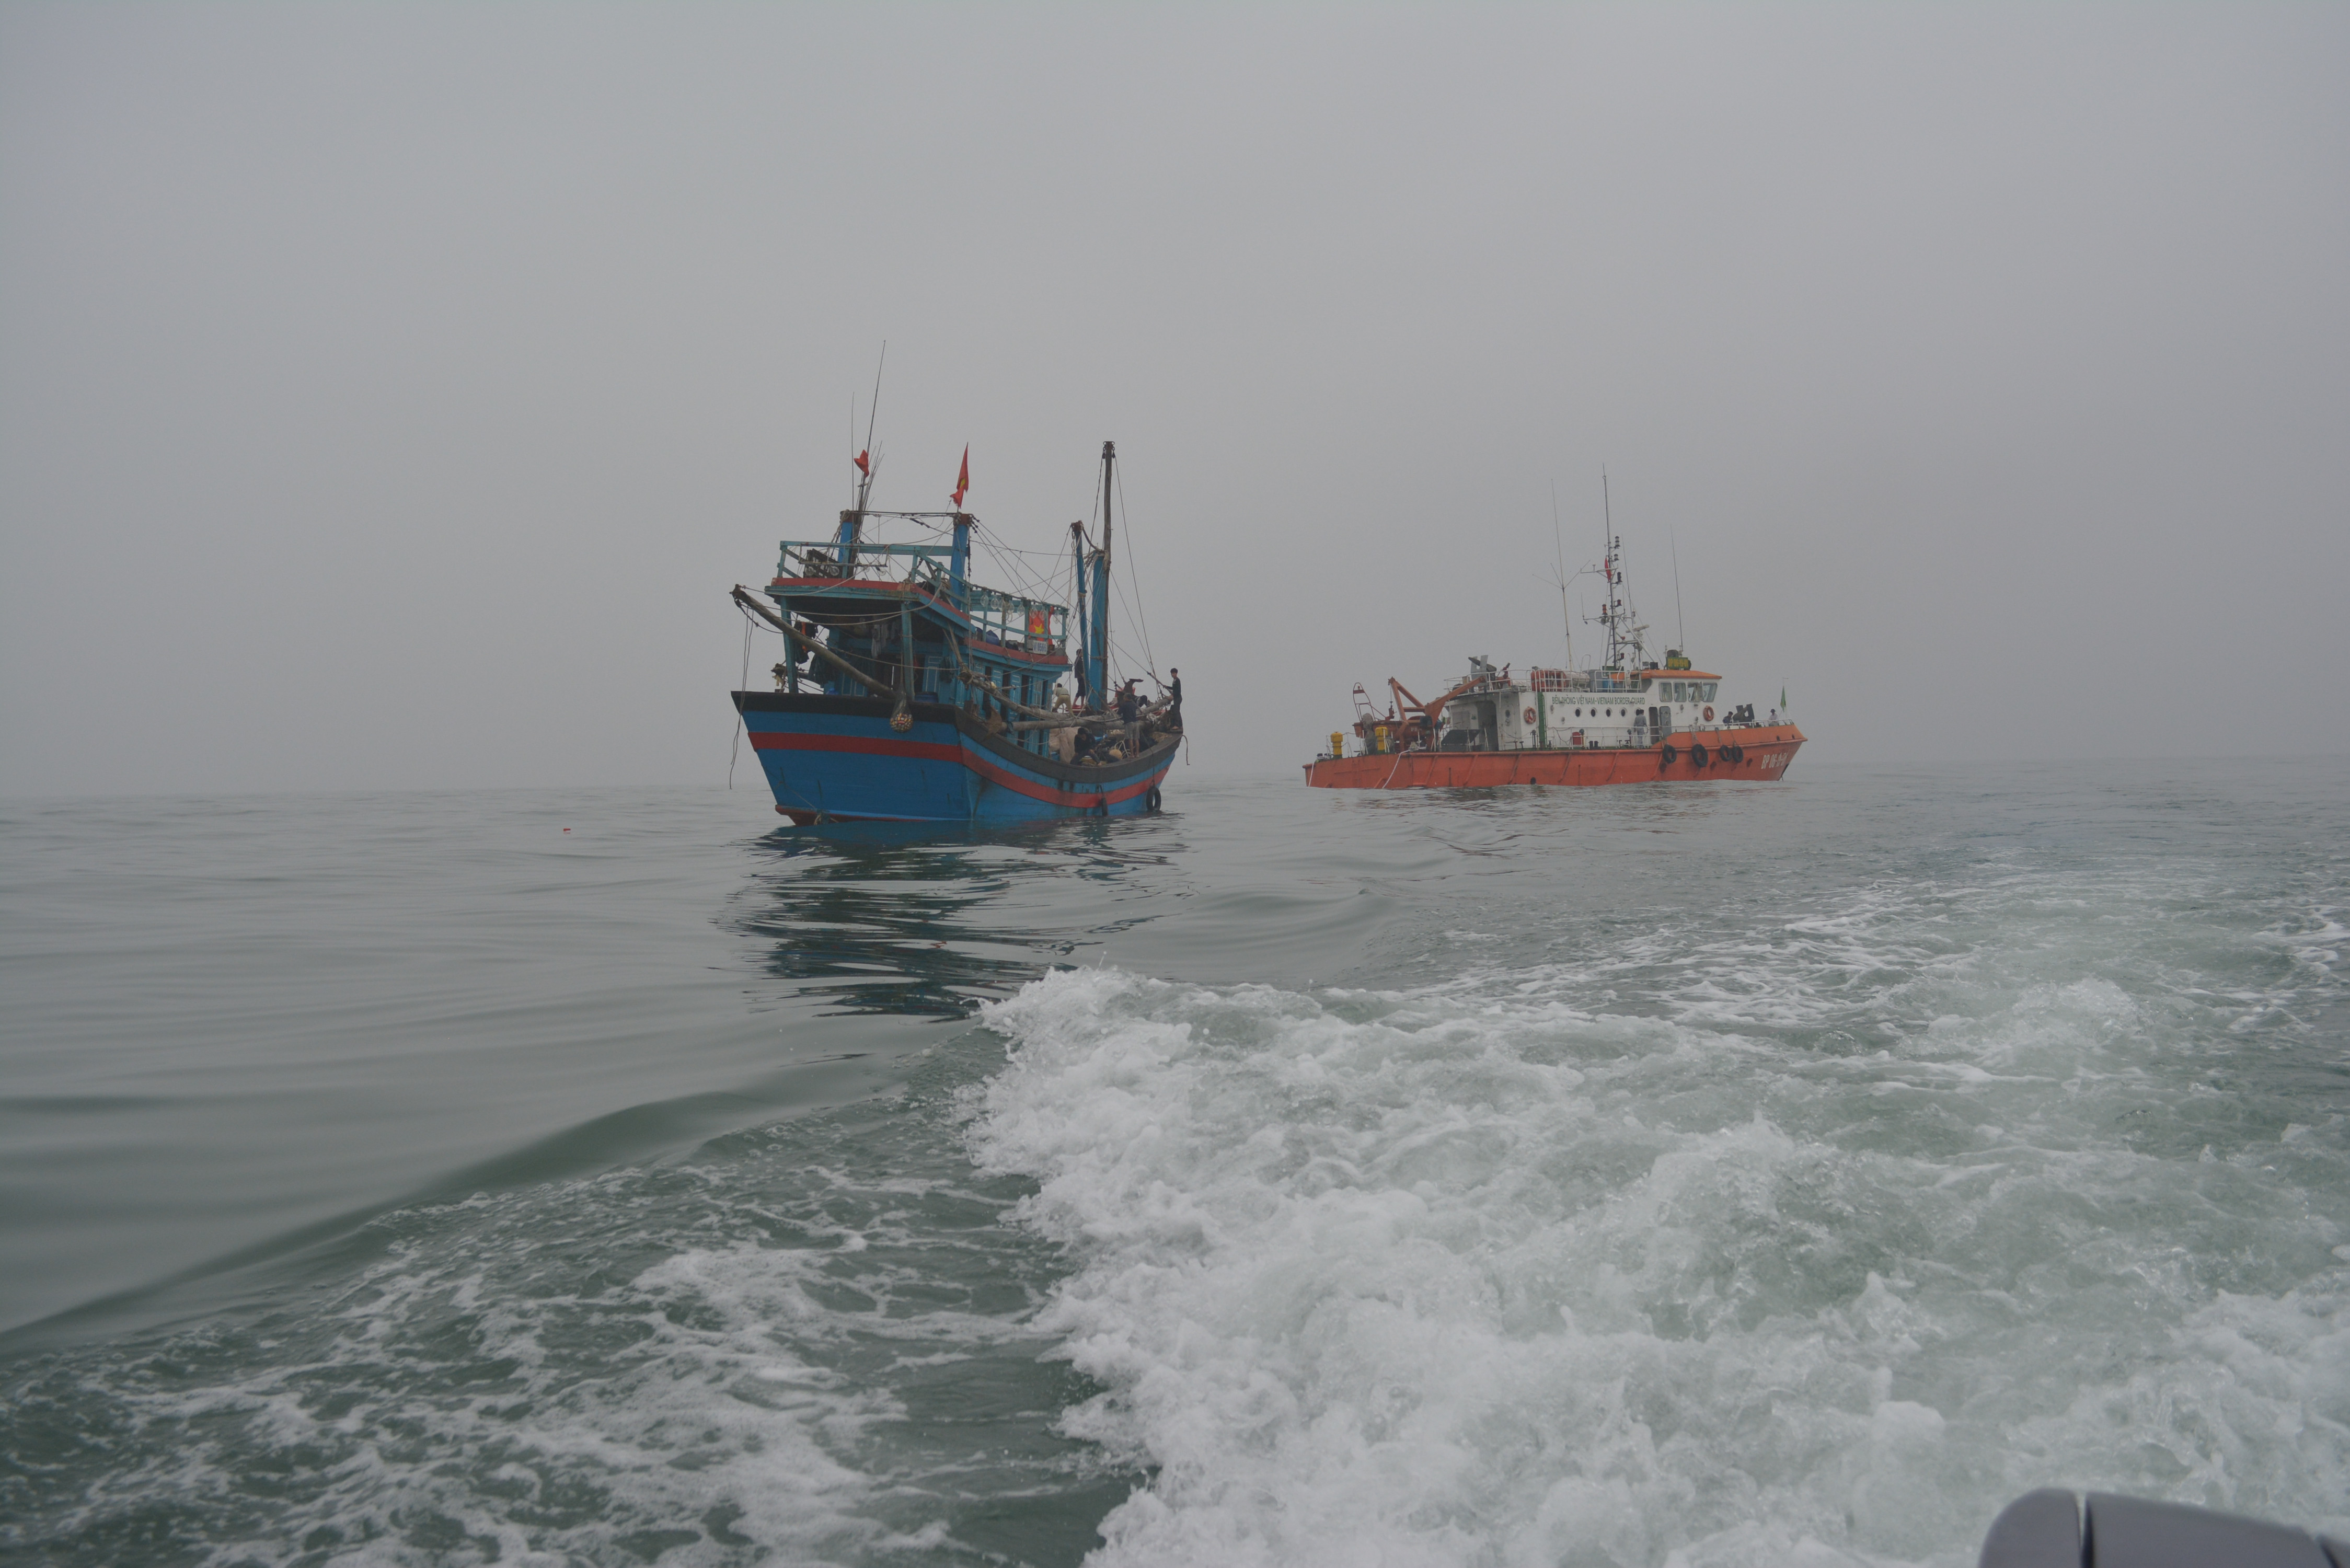 Hải đội 2 cứu nạn ngư dân và tàu cá gặp nạn trên biển.